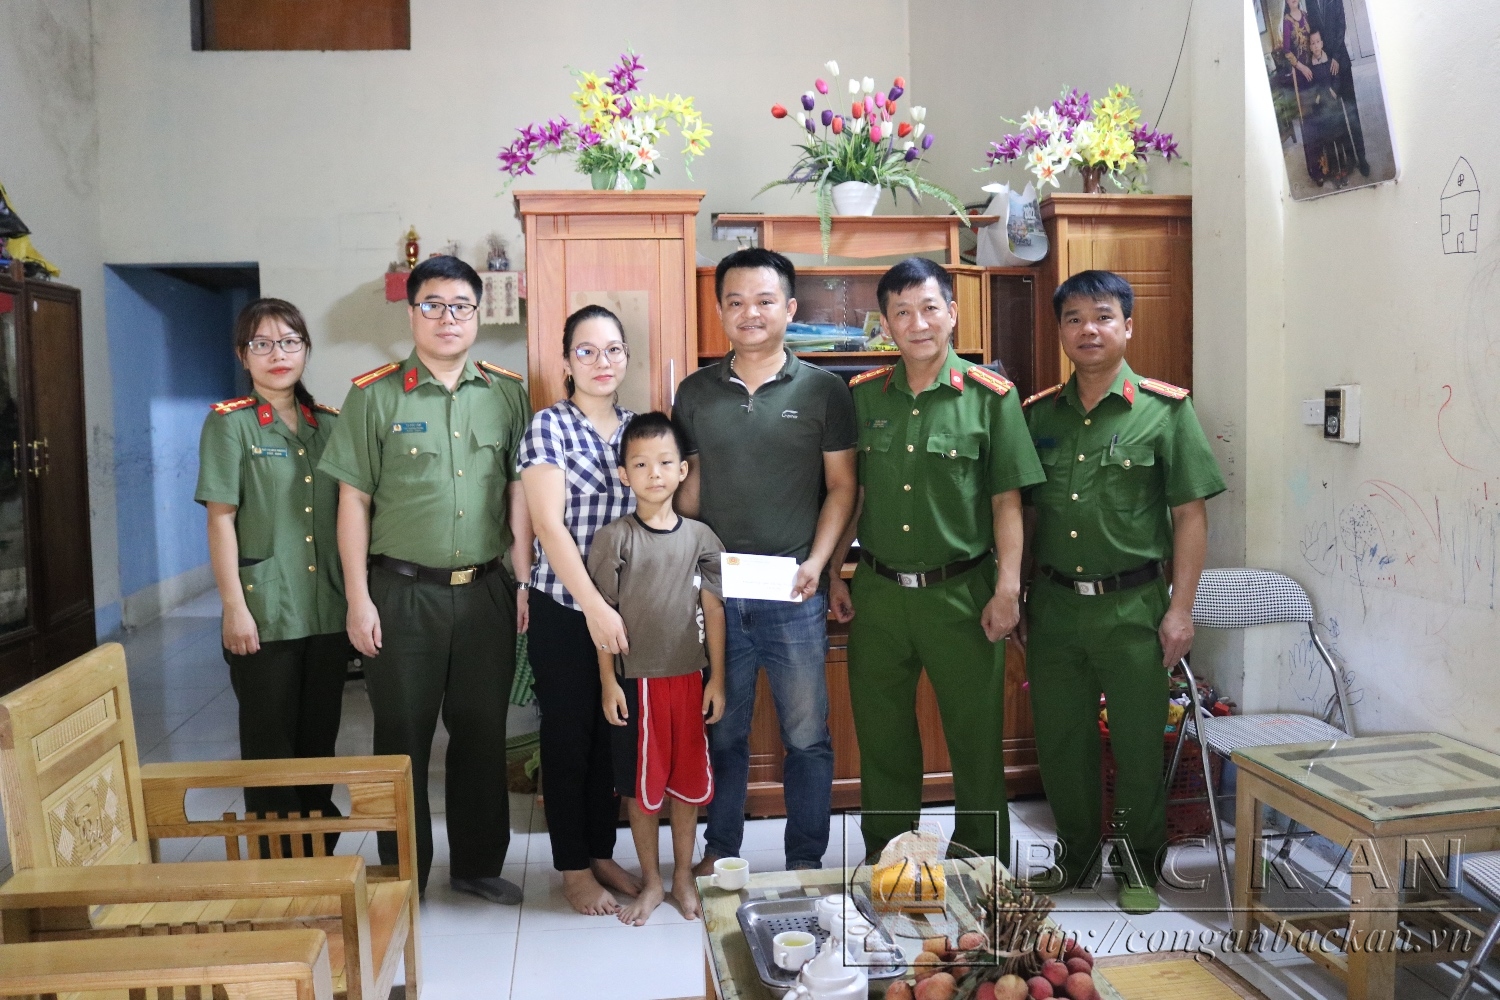 Đại tá Hà Trọng Trung, Phó Bí thư Đảng uỷ, Phó Giám đốc Công an tỉnh thăm gia đình đồng chí Hà Nhân Thái, Phòng Cảnh sát hình sự.